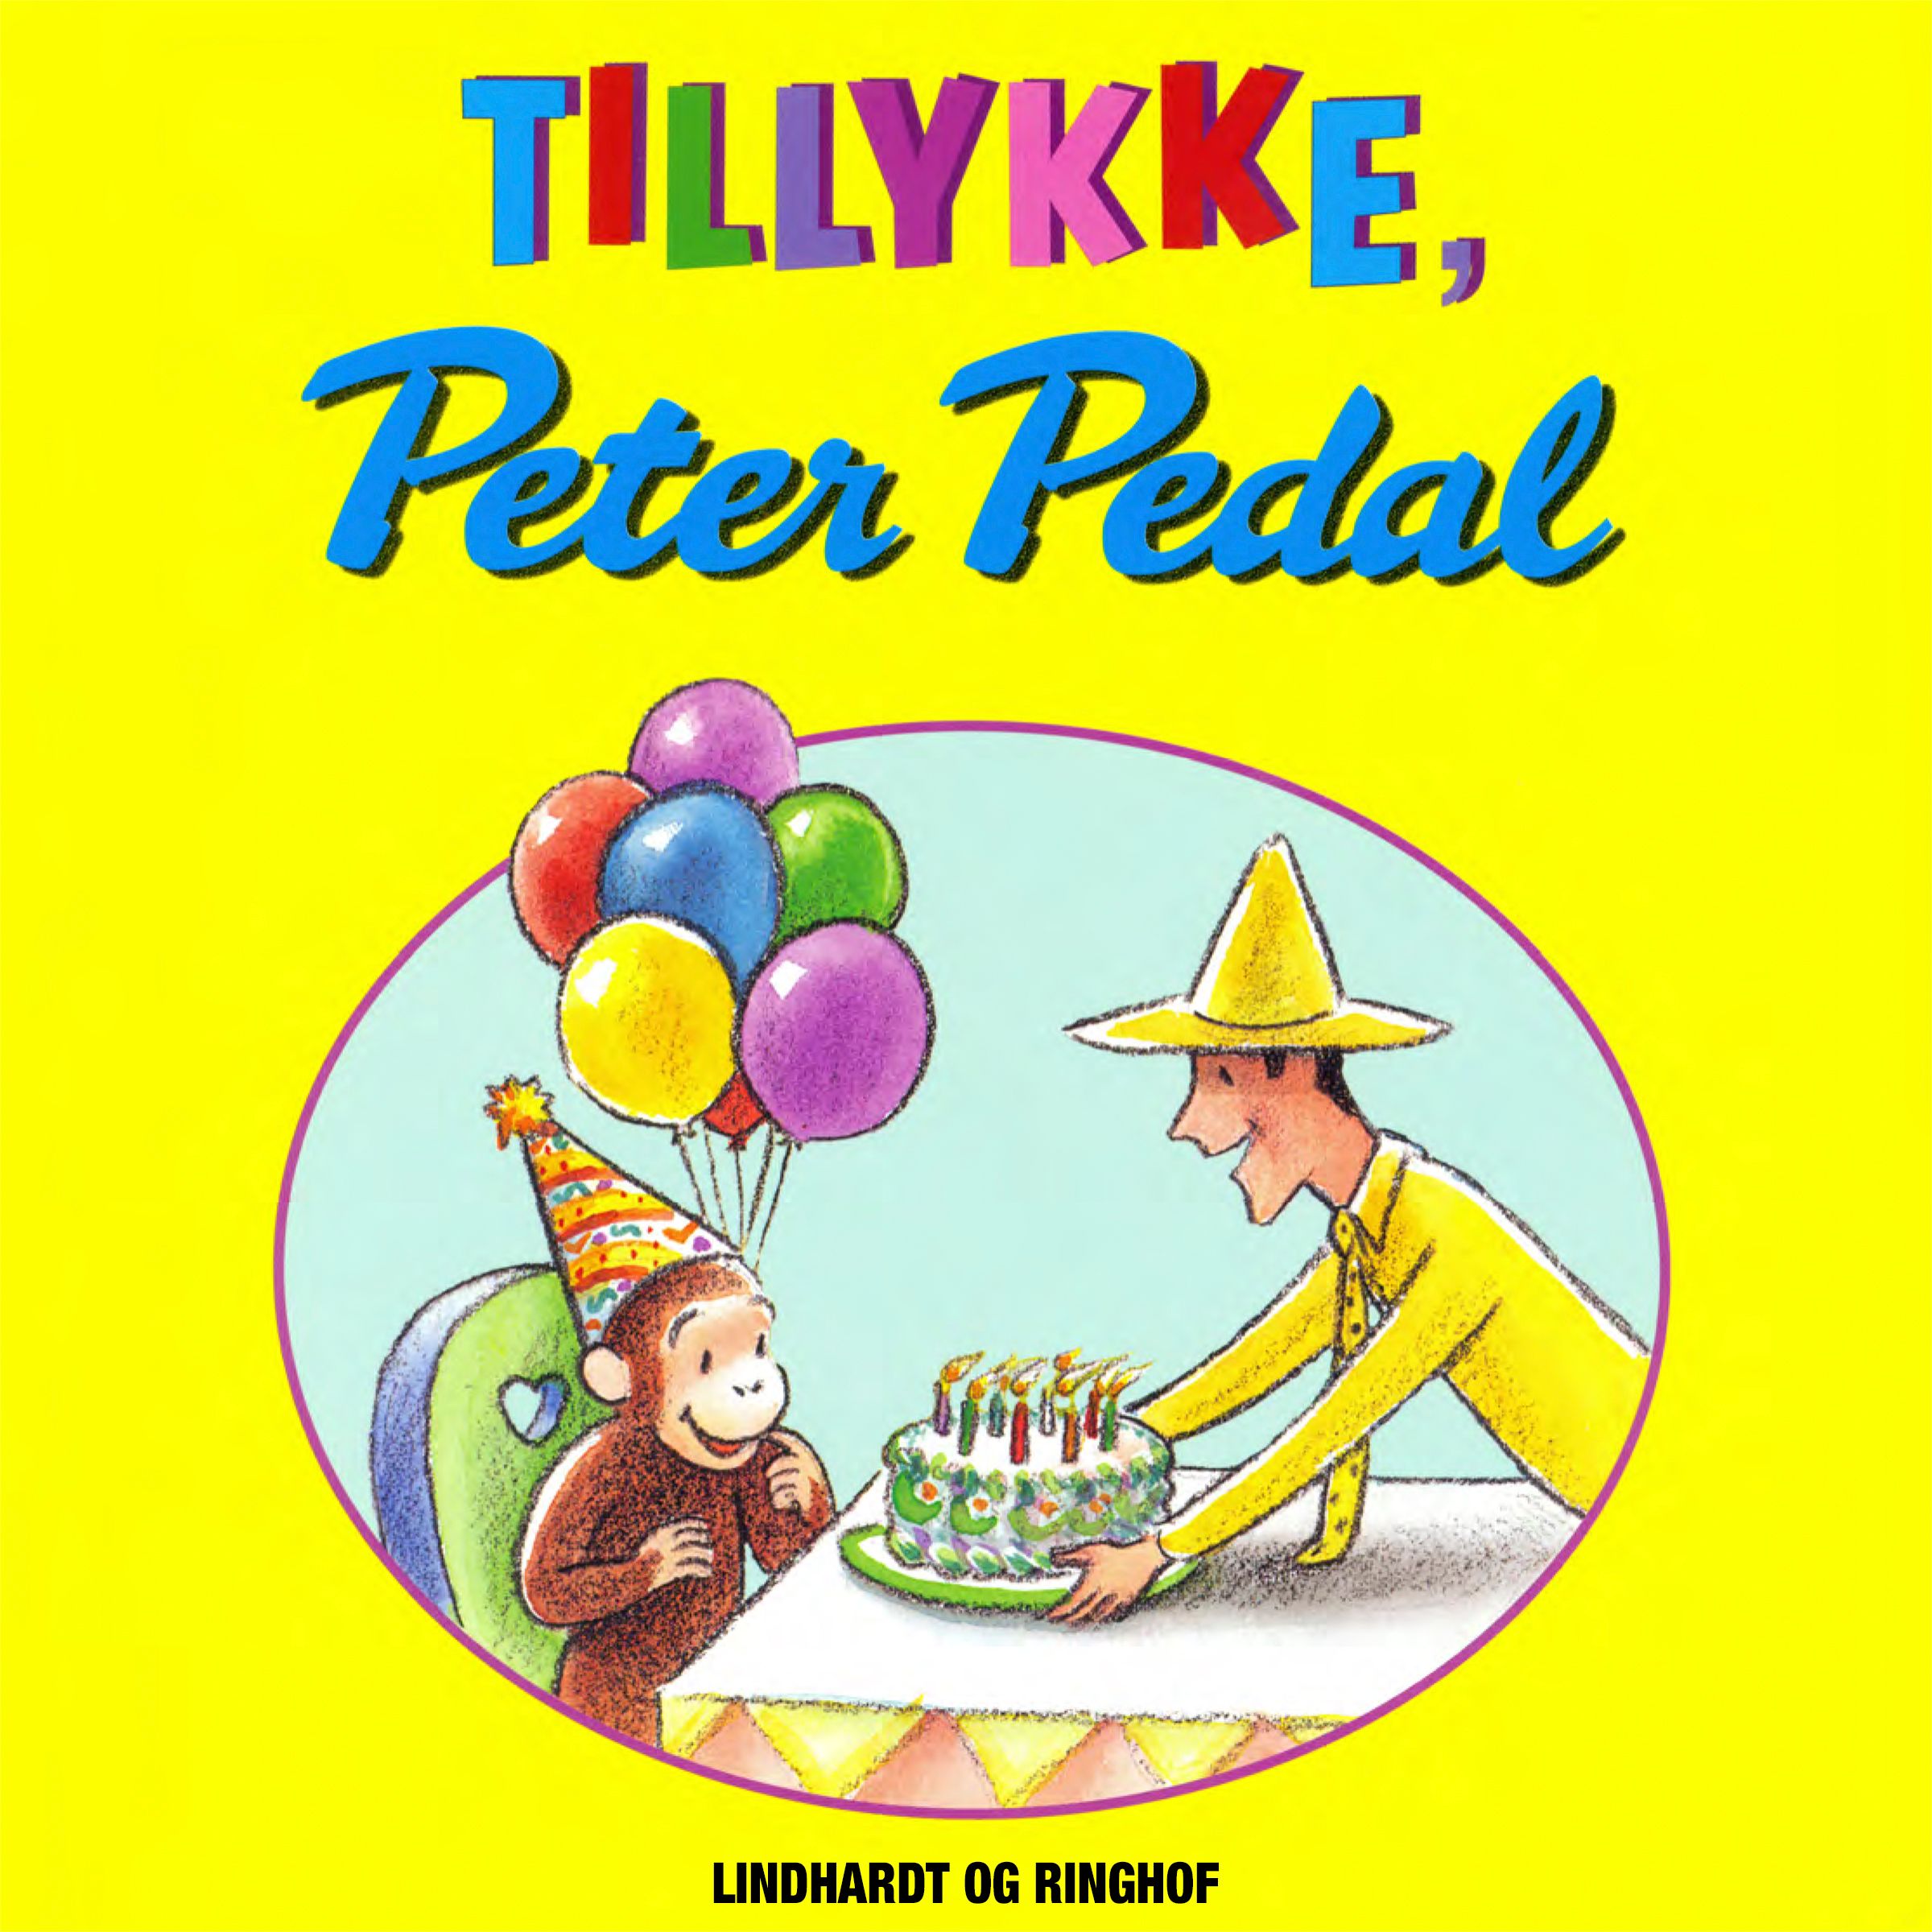 Tillykke, Peter Pedal, lydbog af Margret Og H.a. Rey